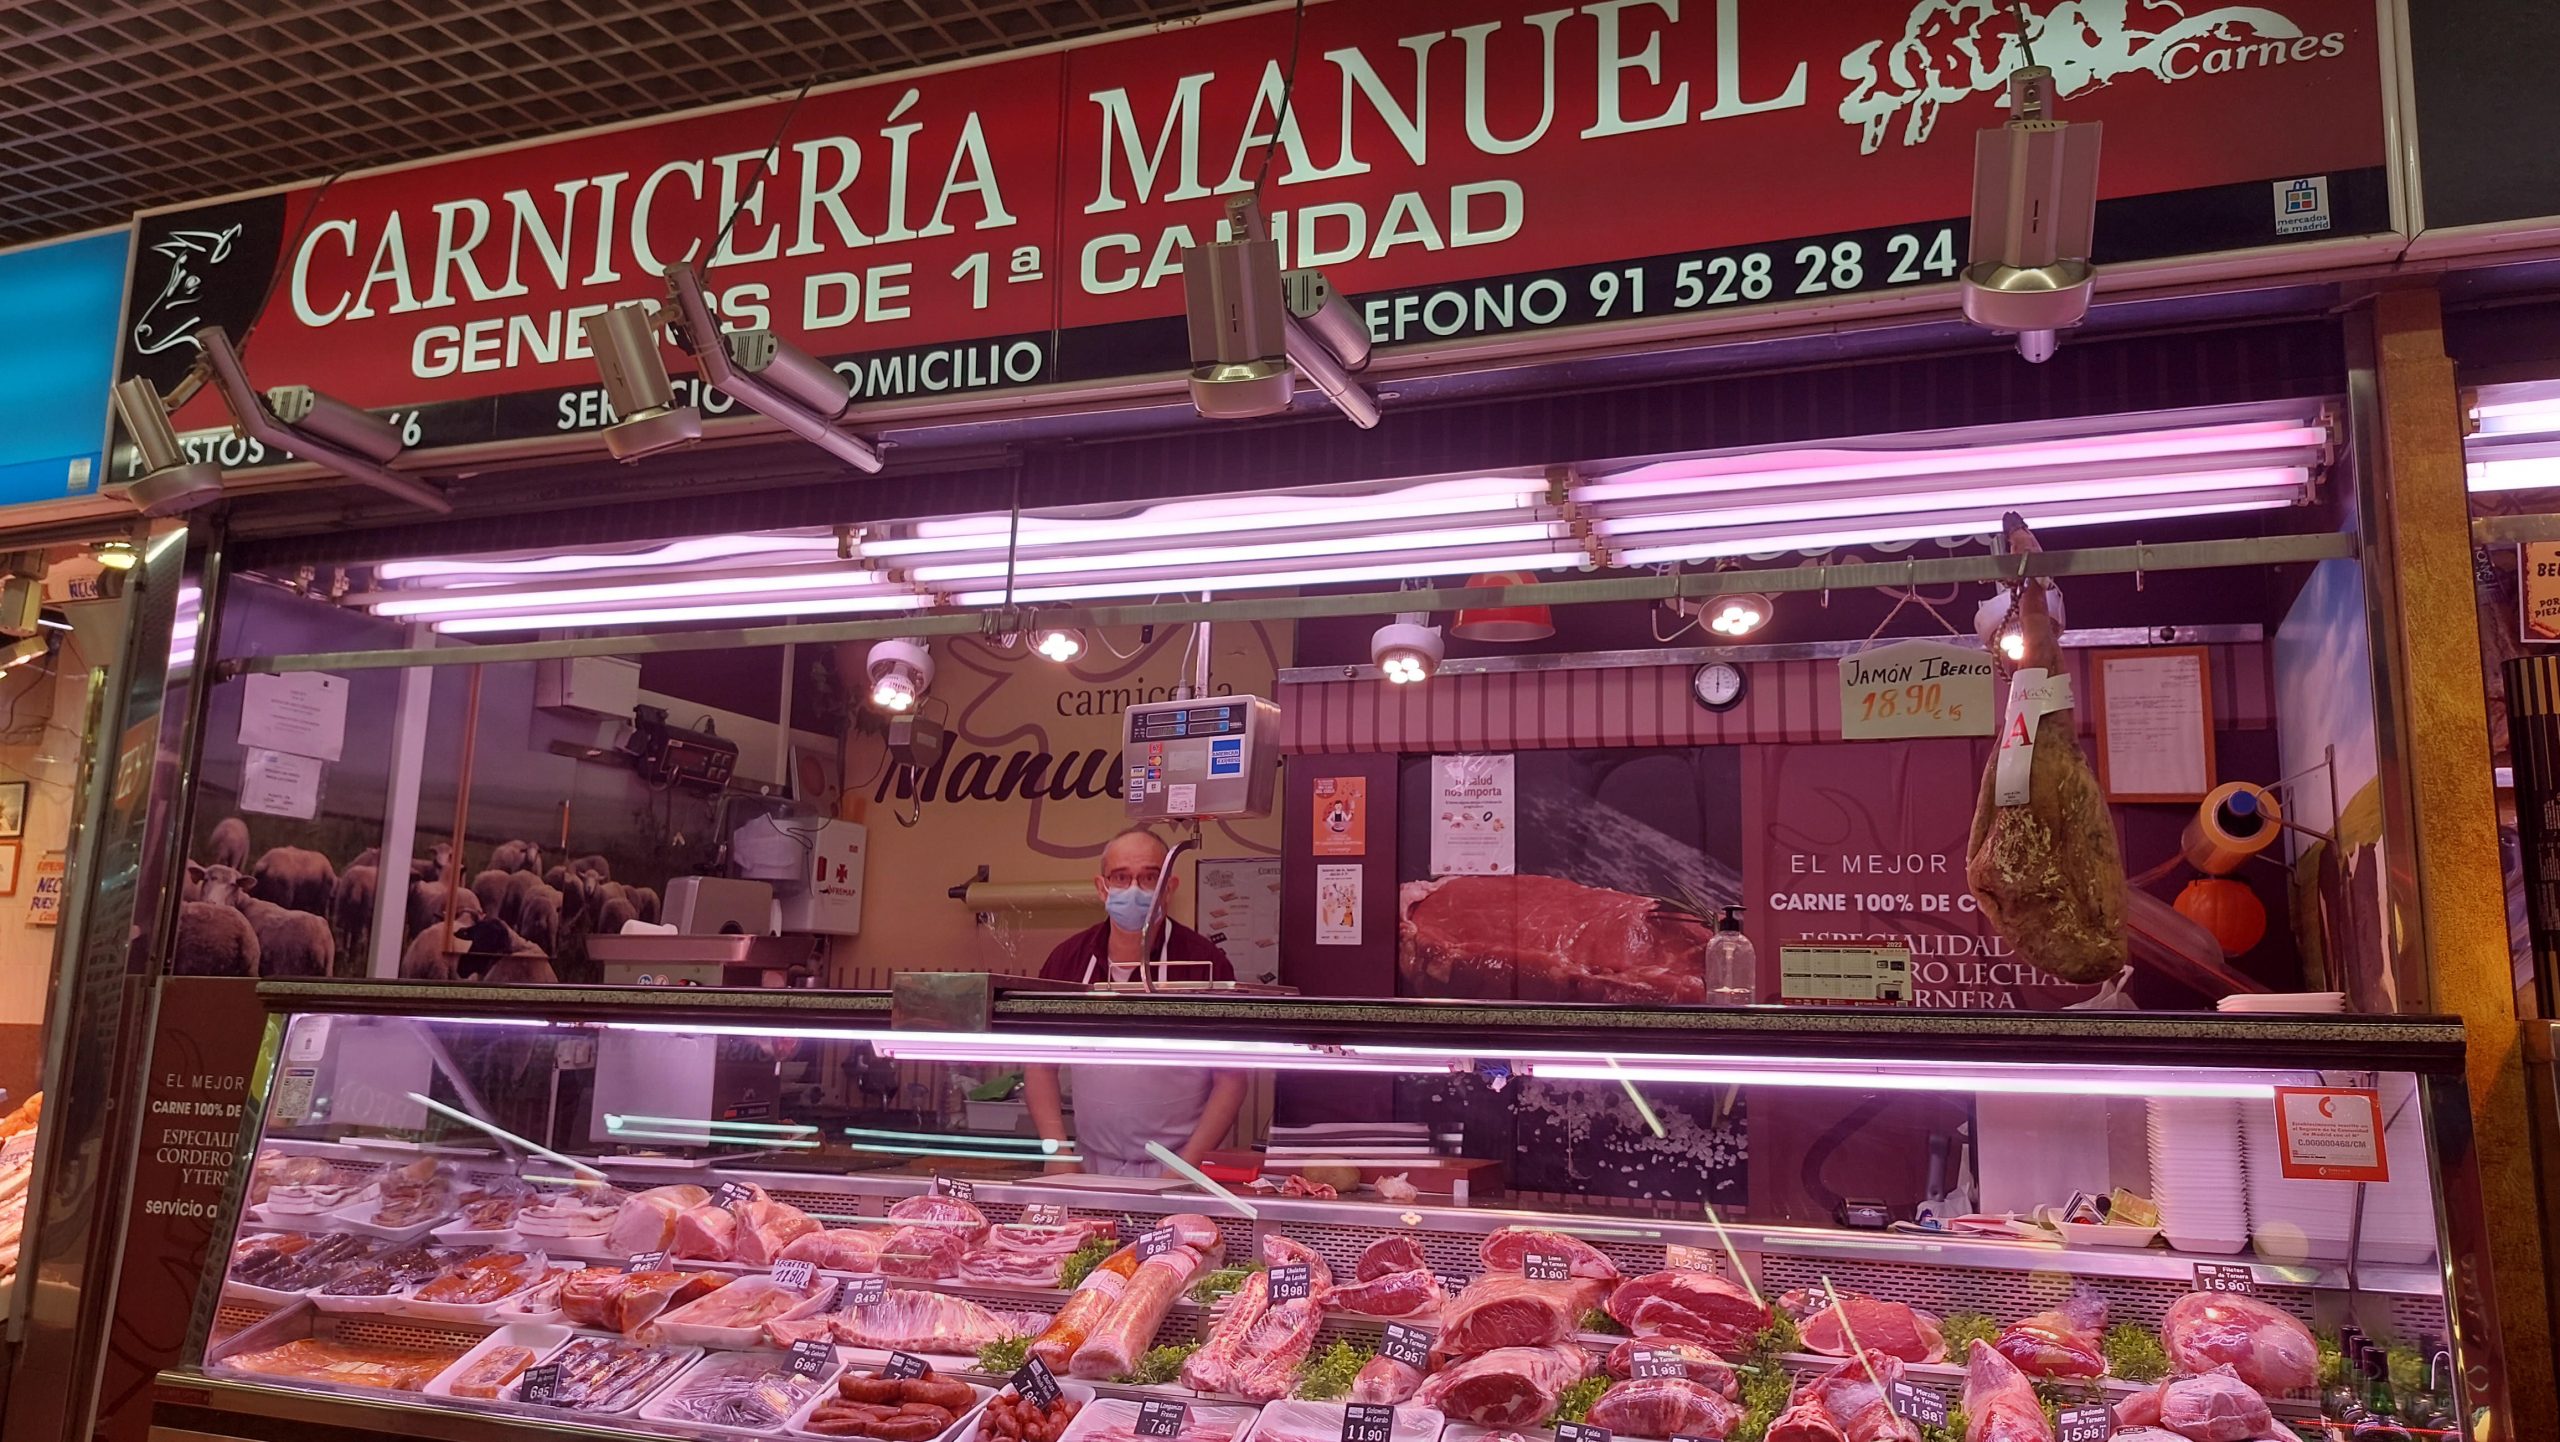 Carnicería Manuel Puesto-65-66